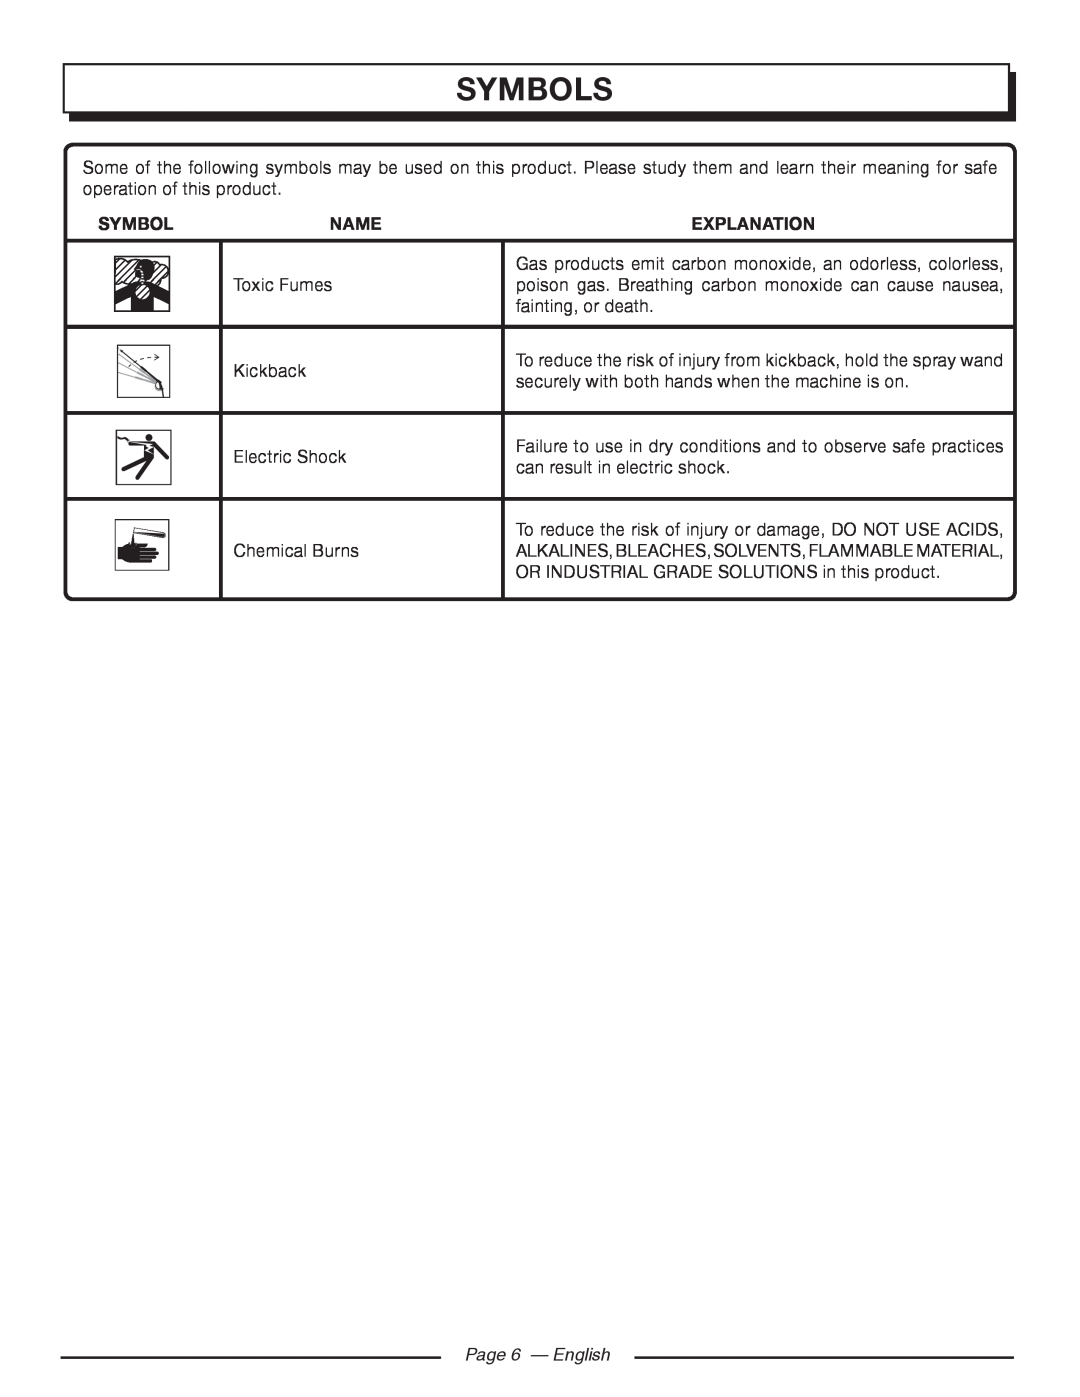 Homelite UT80516 manuel dutilisation Page 6 - English, Symbols, Name, Explanation 